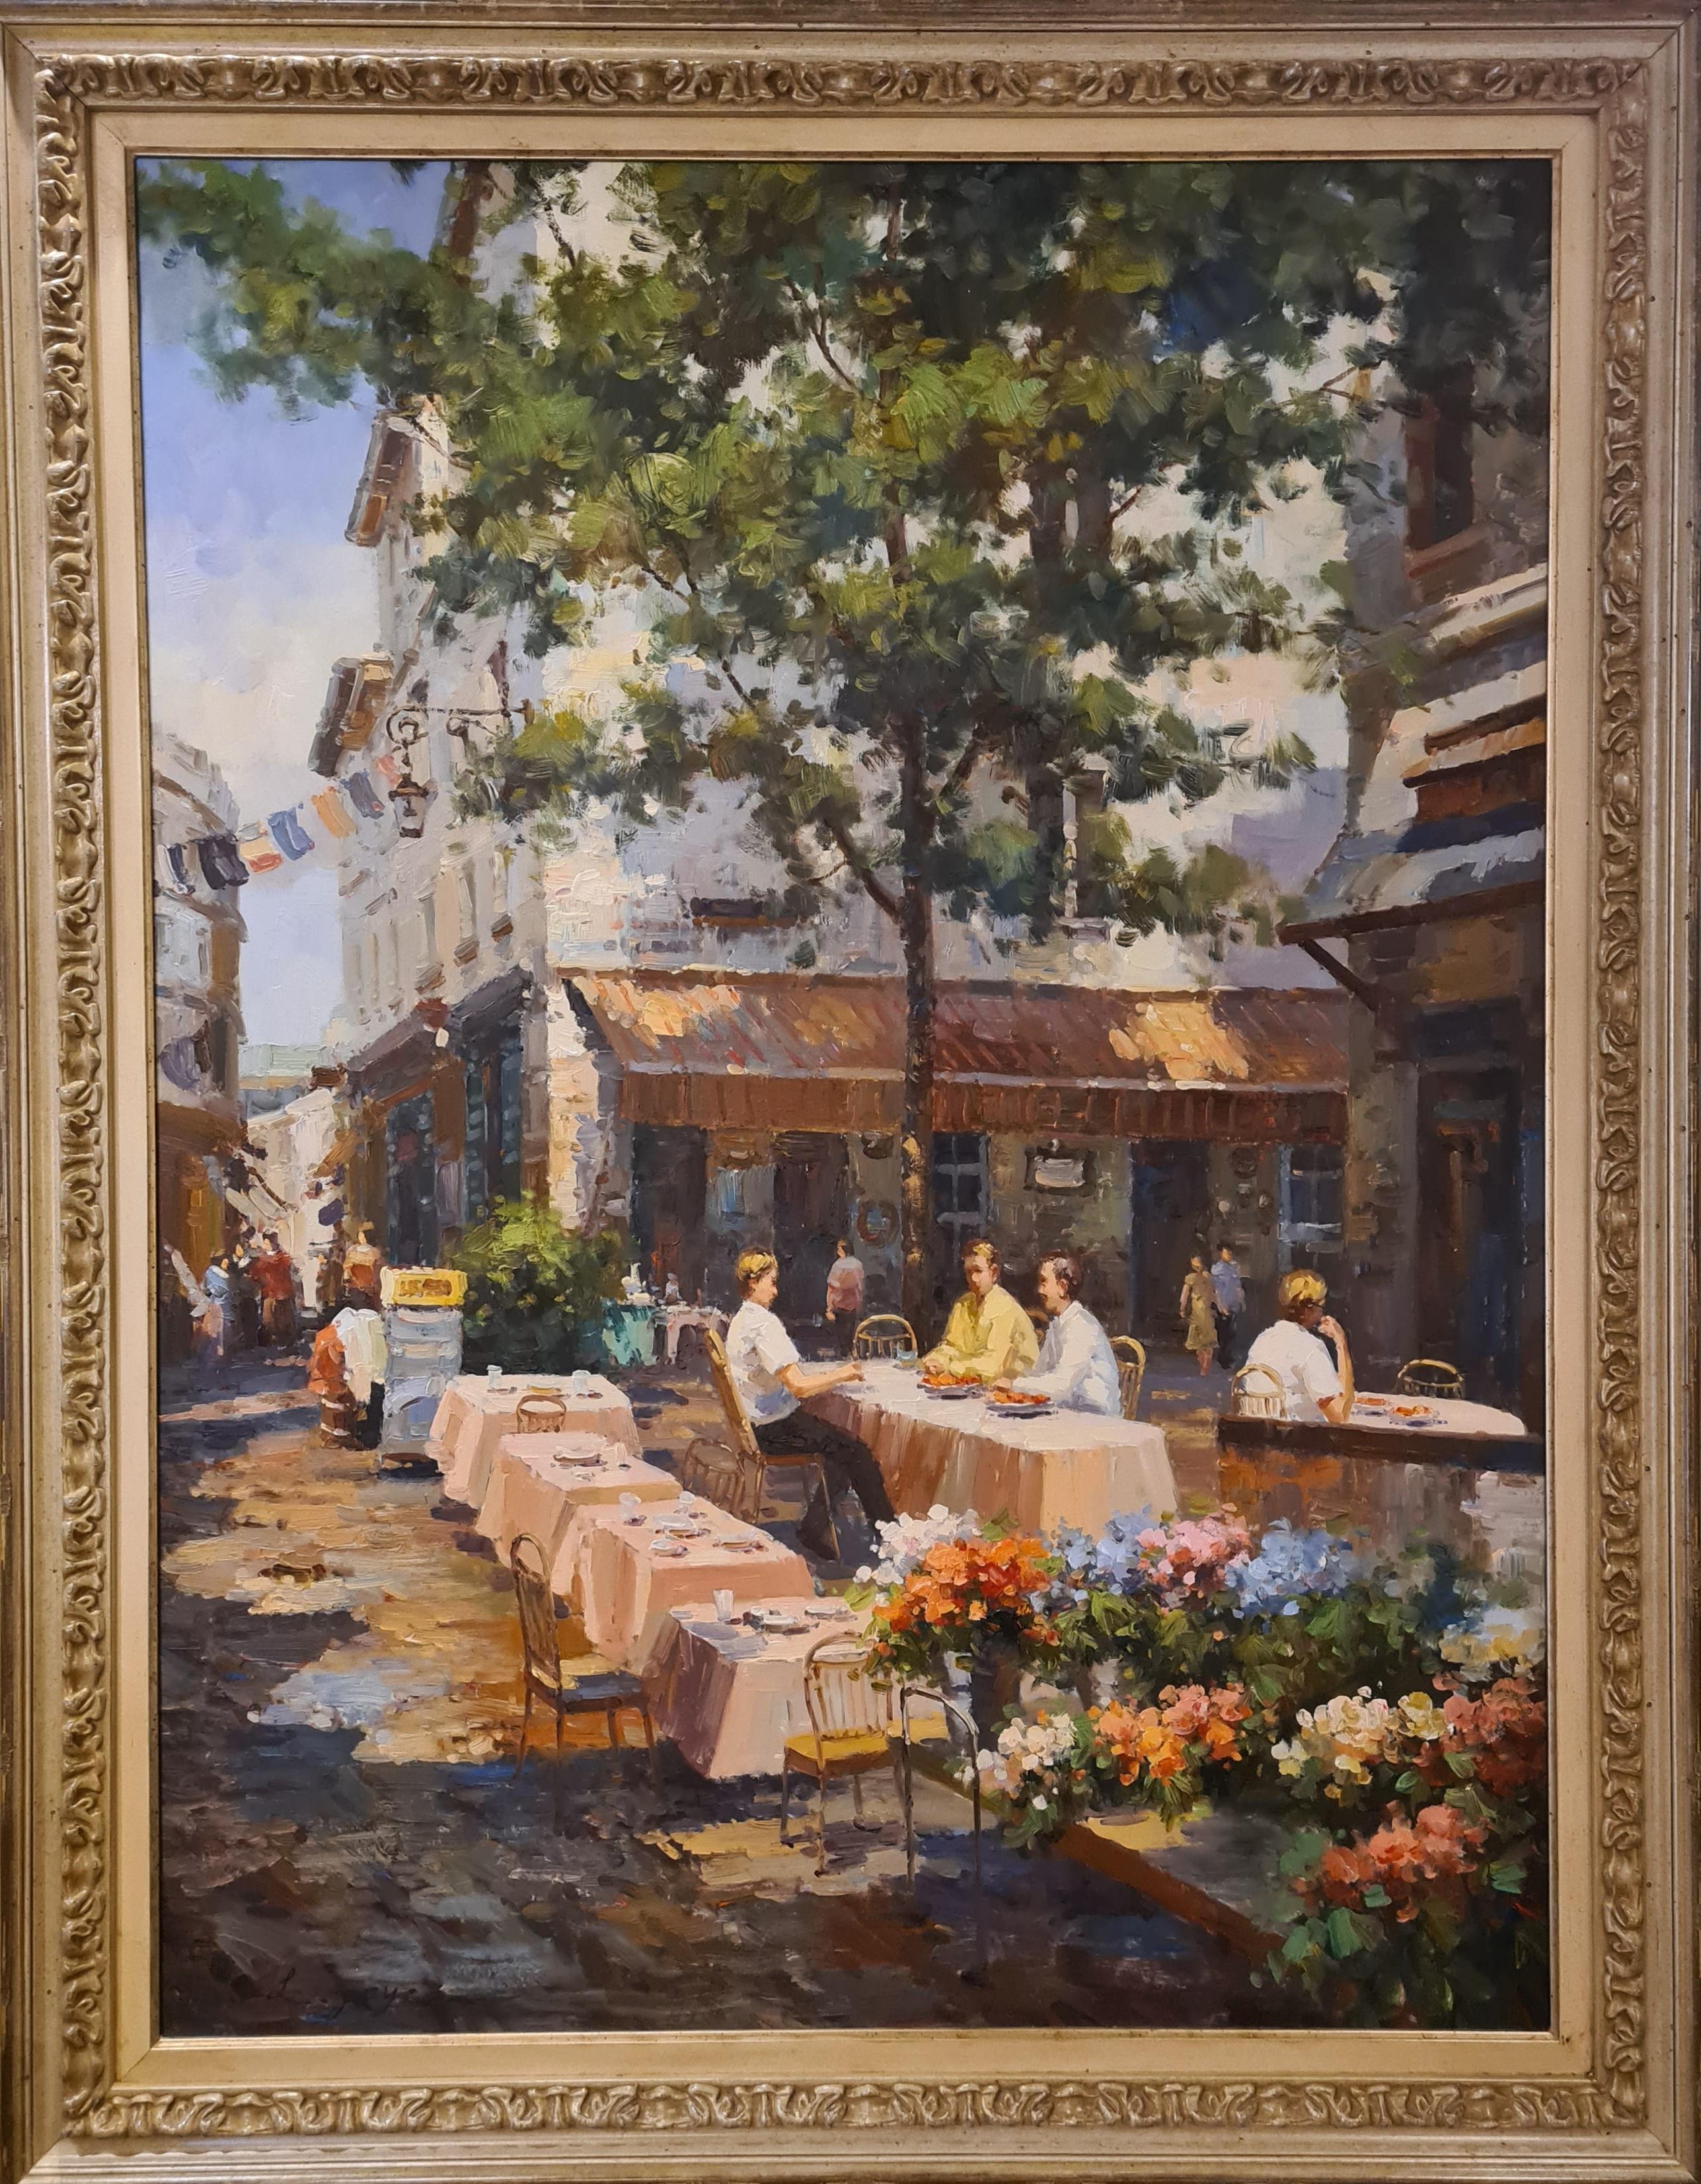 Le Café , Large Scale Parisian Café Terrace Scene - Contemporary Painting by L Joyce